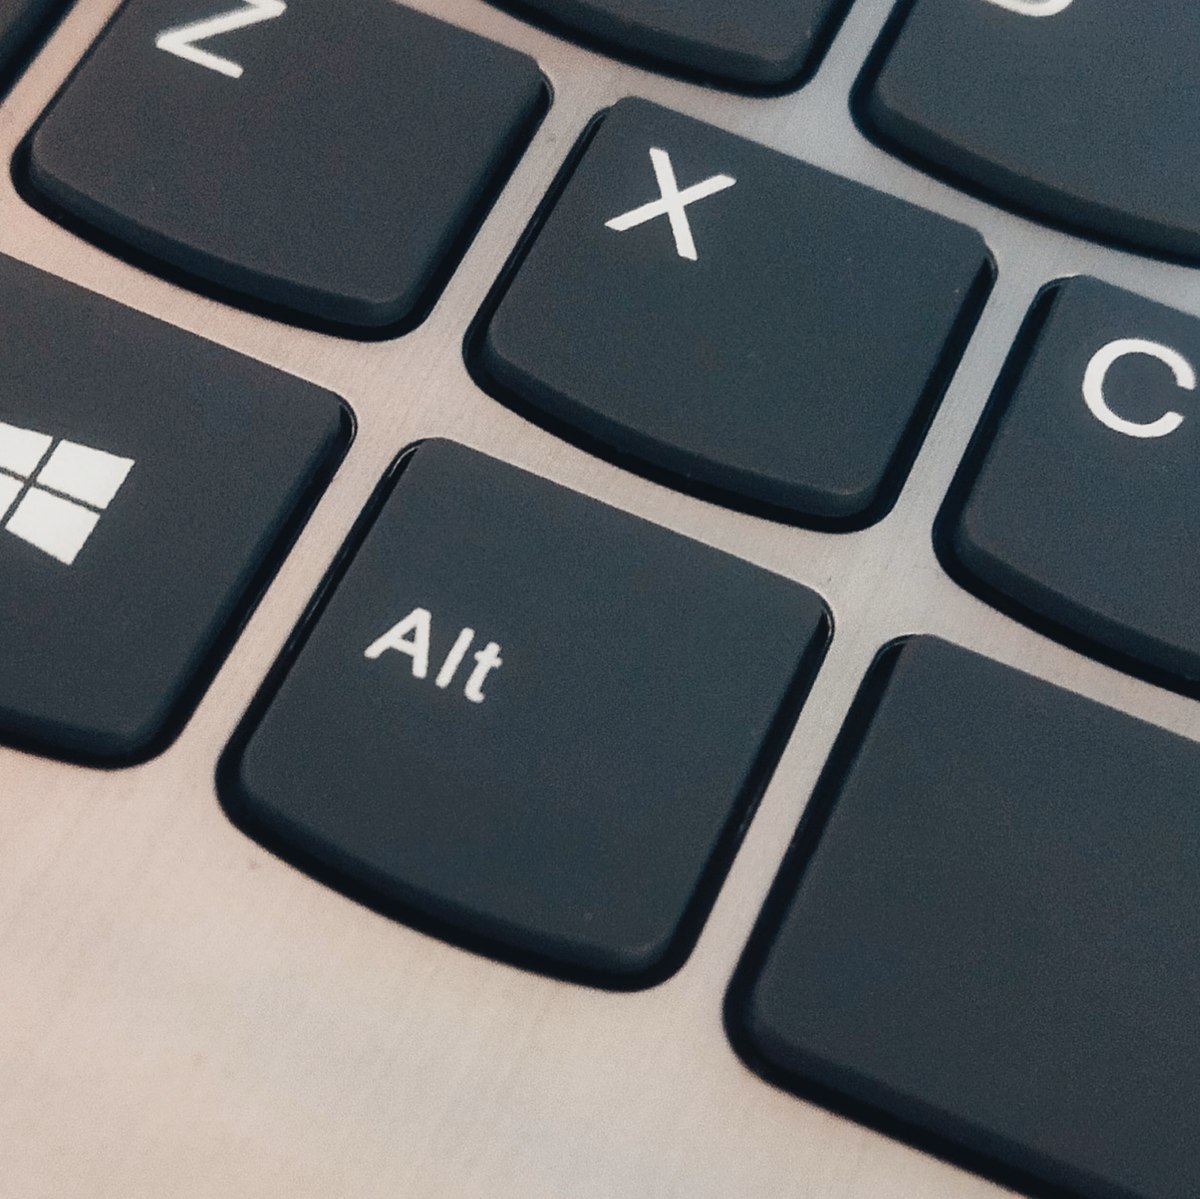 Windows key on a keyboard